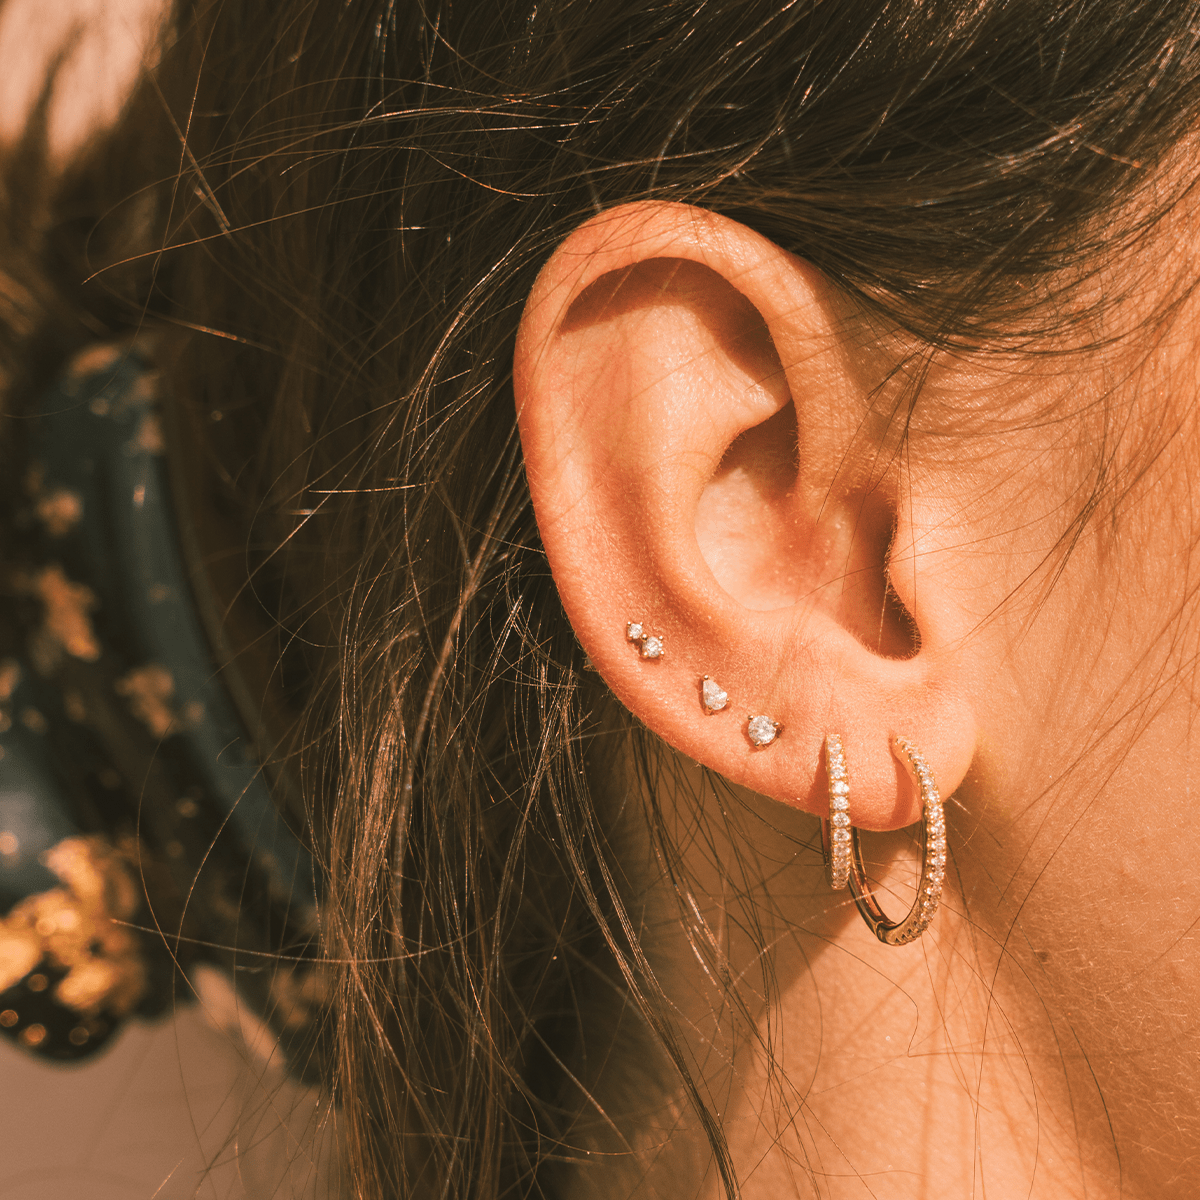 Luxe Double Stone Stud Earrings Gold Vermeil Earring